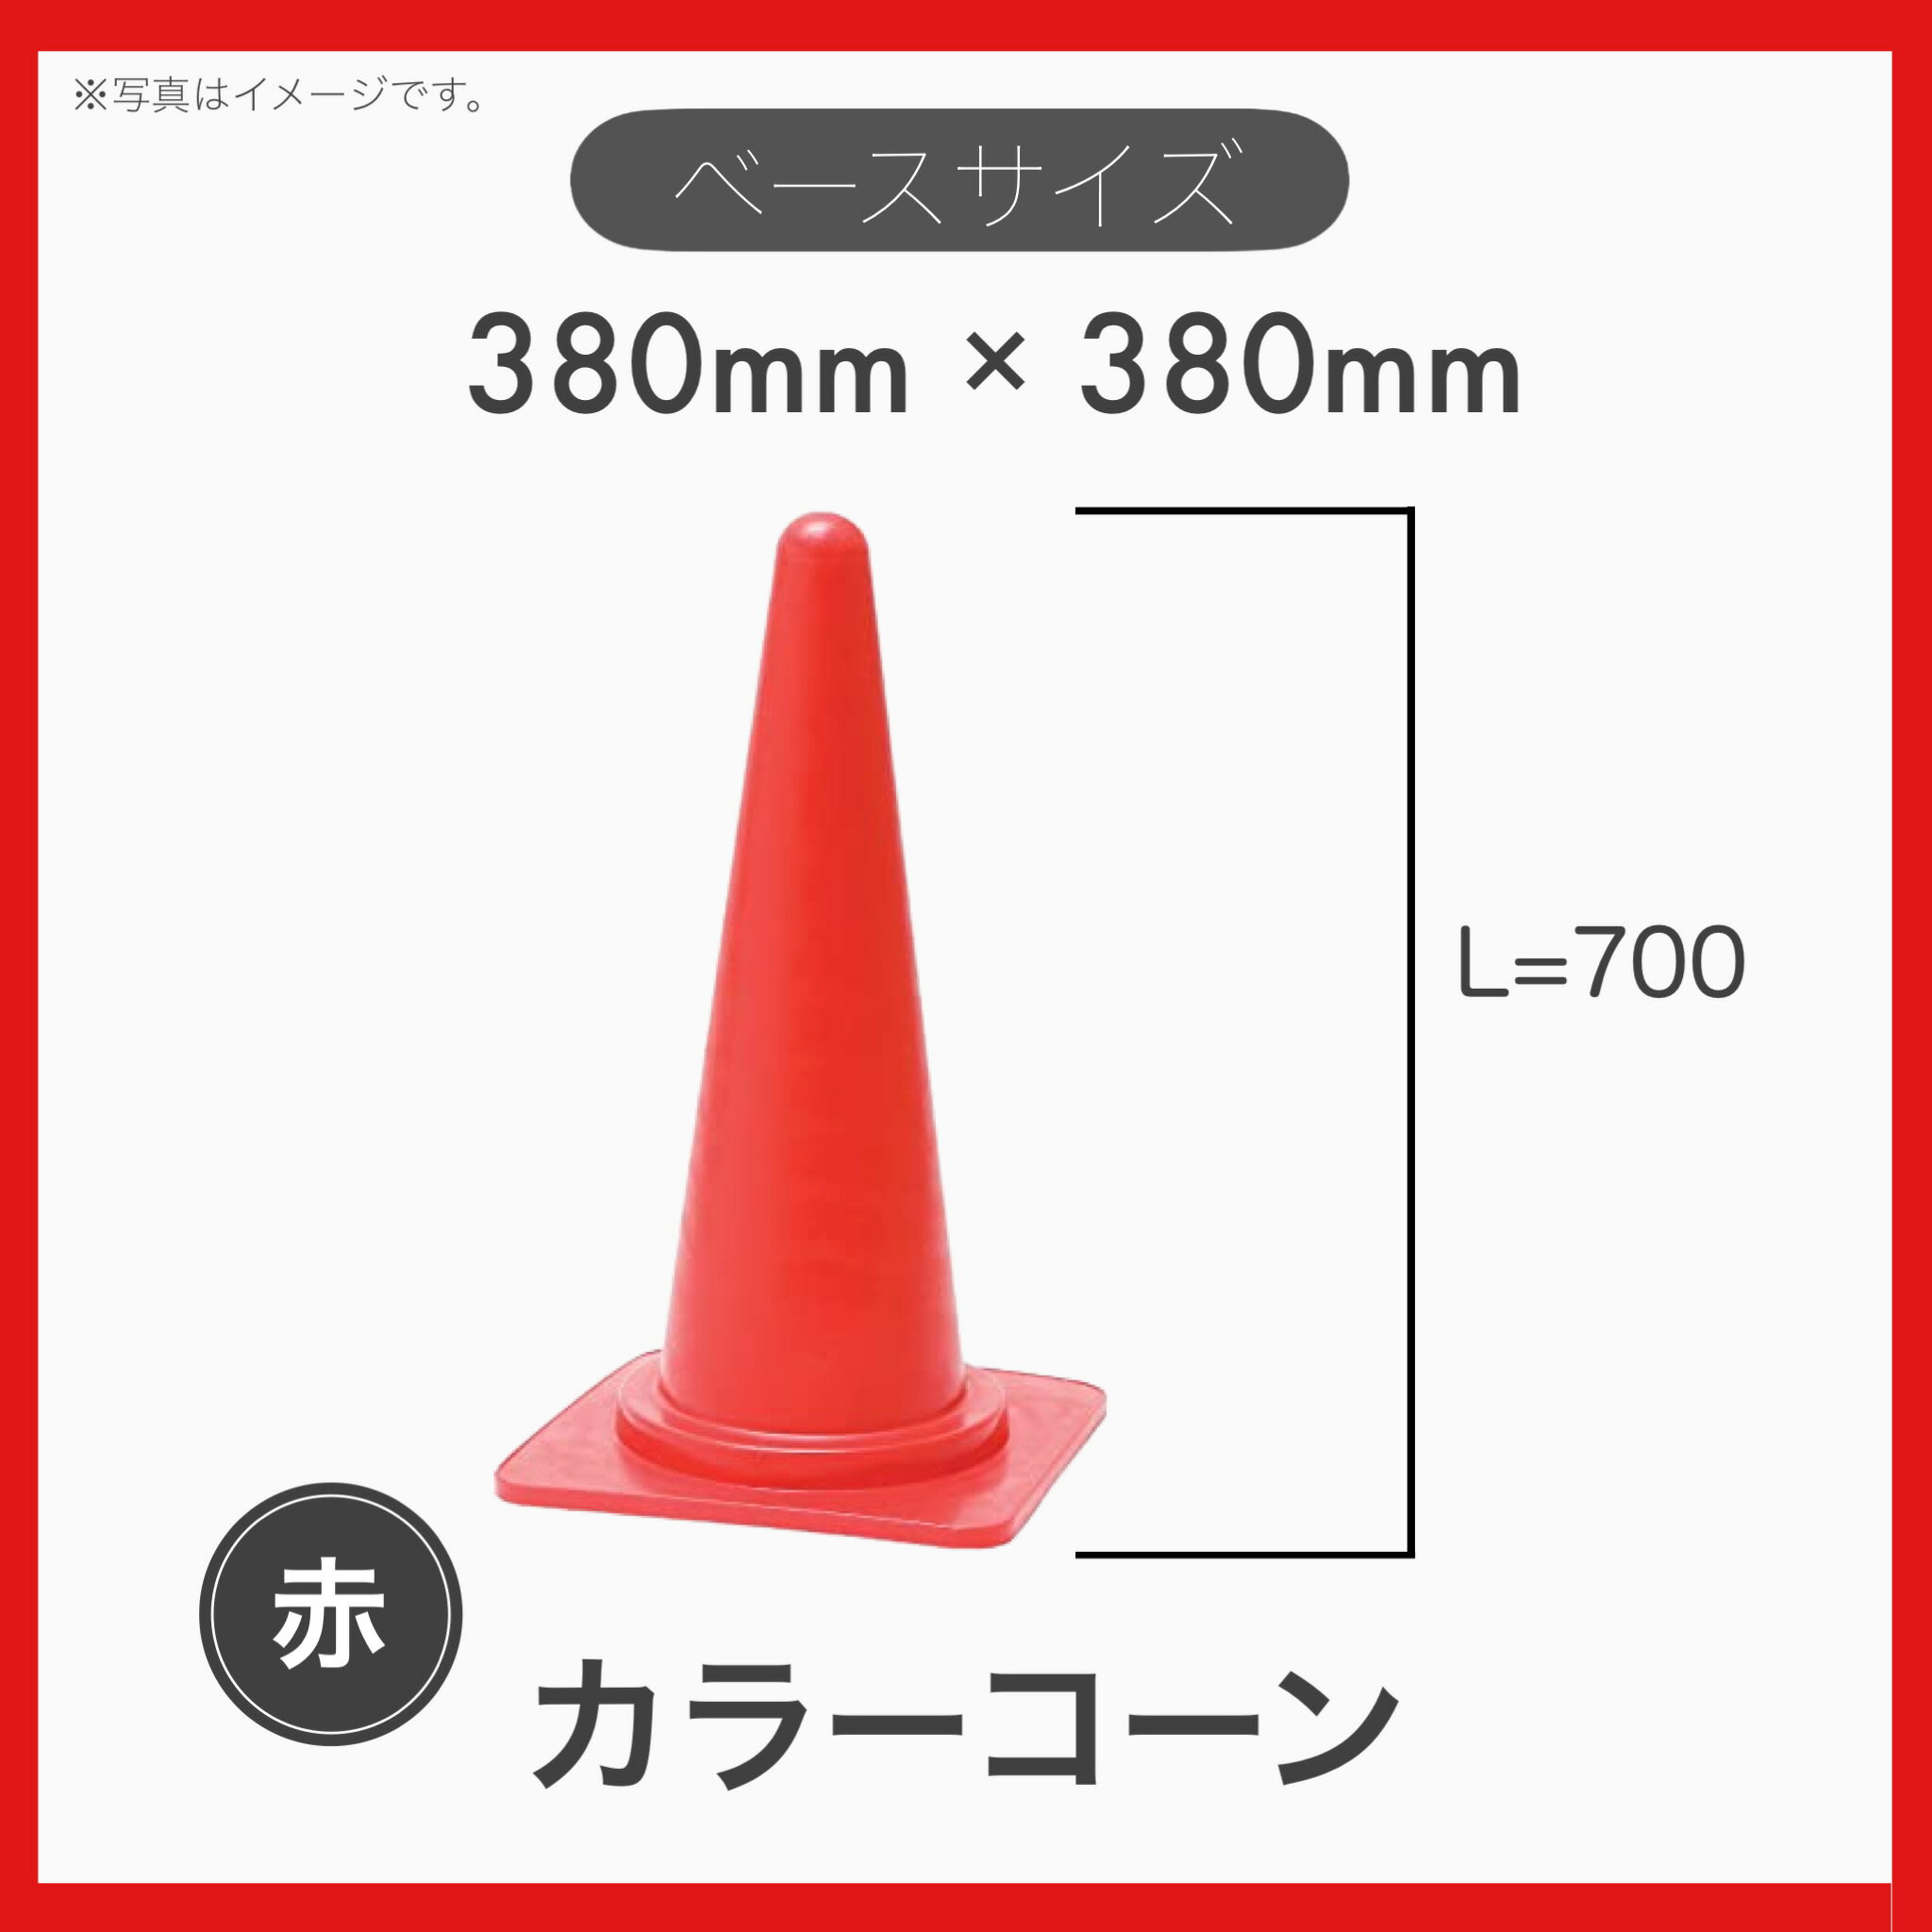 【2本セット】 カラーコーン ロードコーン 三角コーン H-700 赤色